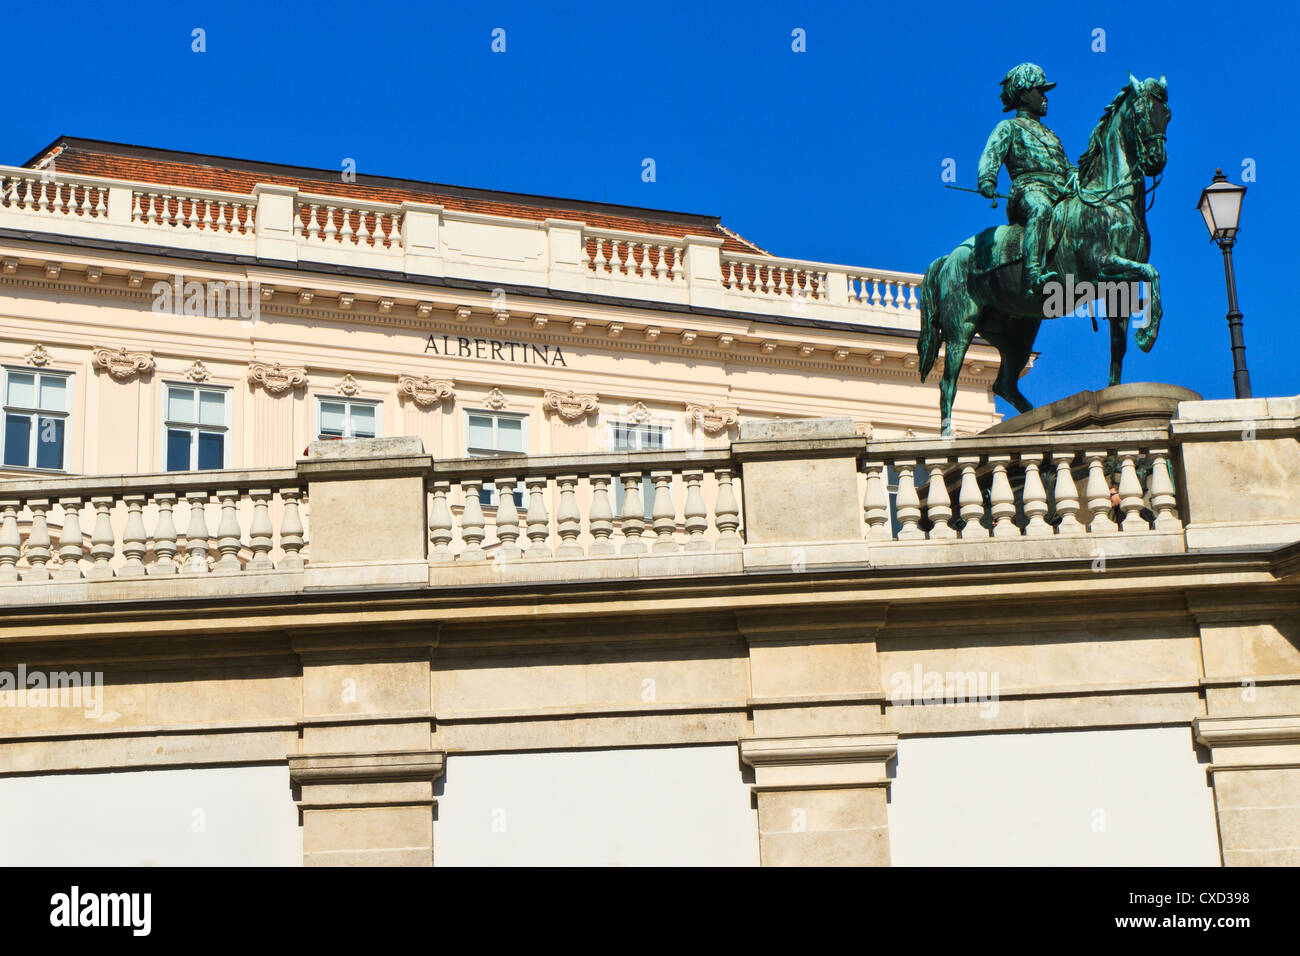 / Palais Albertina Museum, Vienne, Autriche Banque D'Images